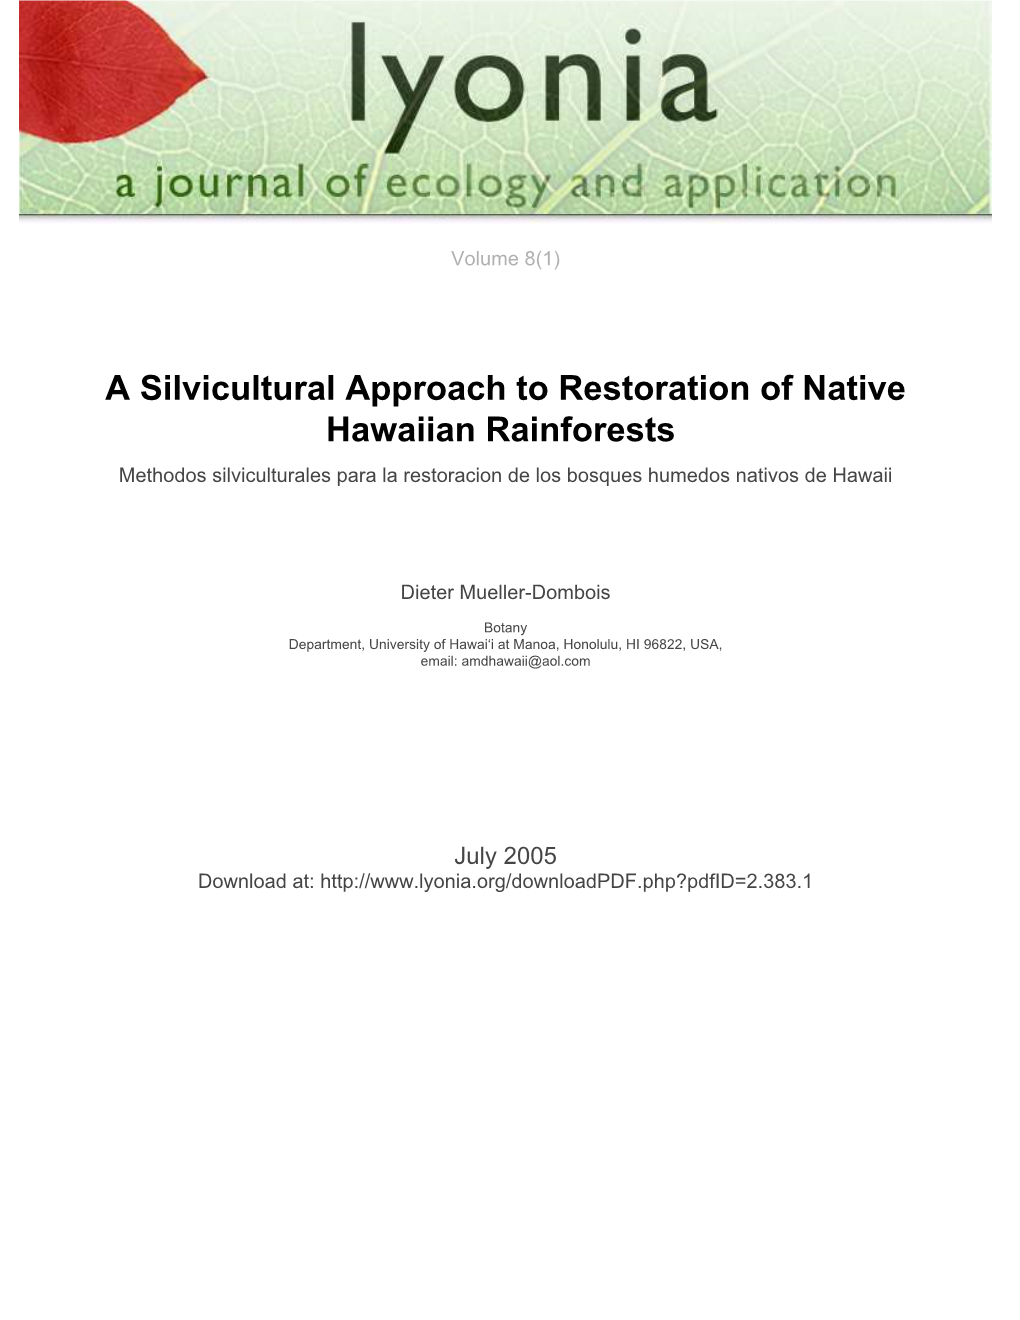 A Silvicultural Approach to Restoration of Native Hawaiian Rainforests Methodos Silviculturales Para La Restoracion De Los Bosques Humedos Nativos De Hawaii